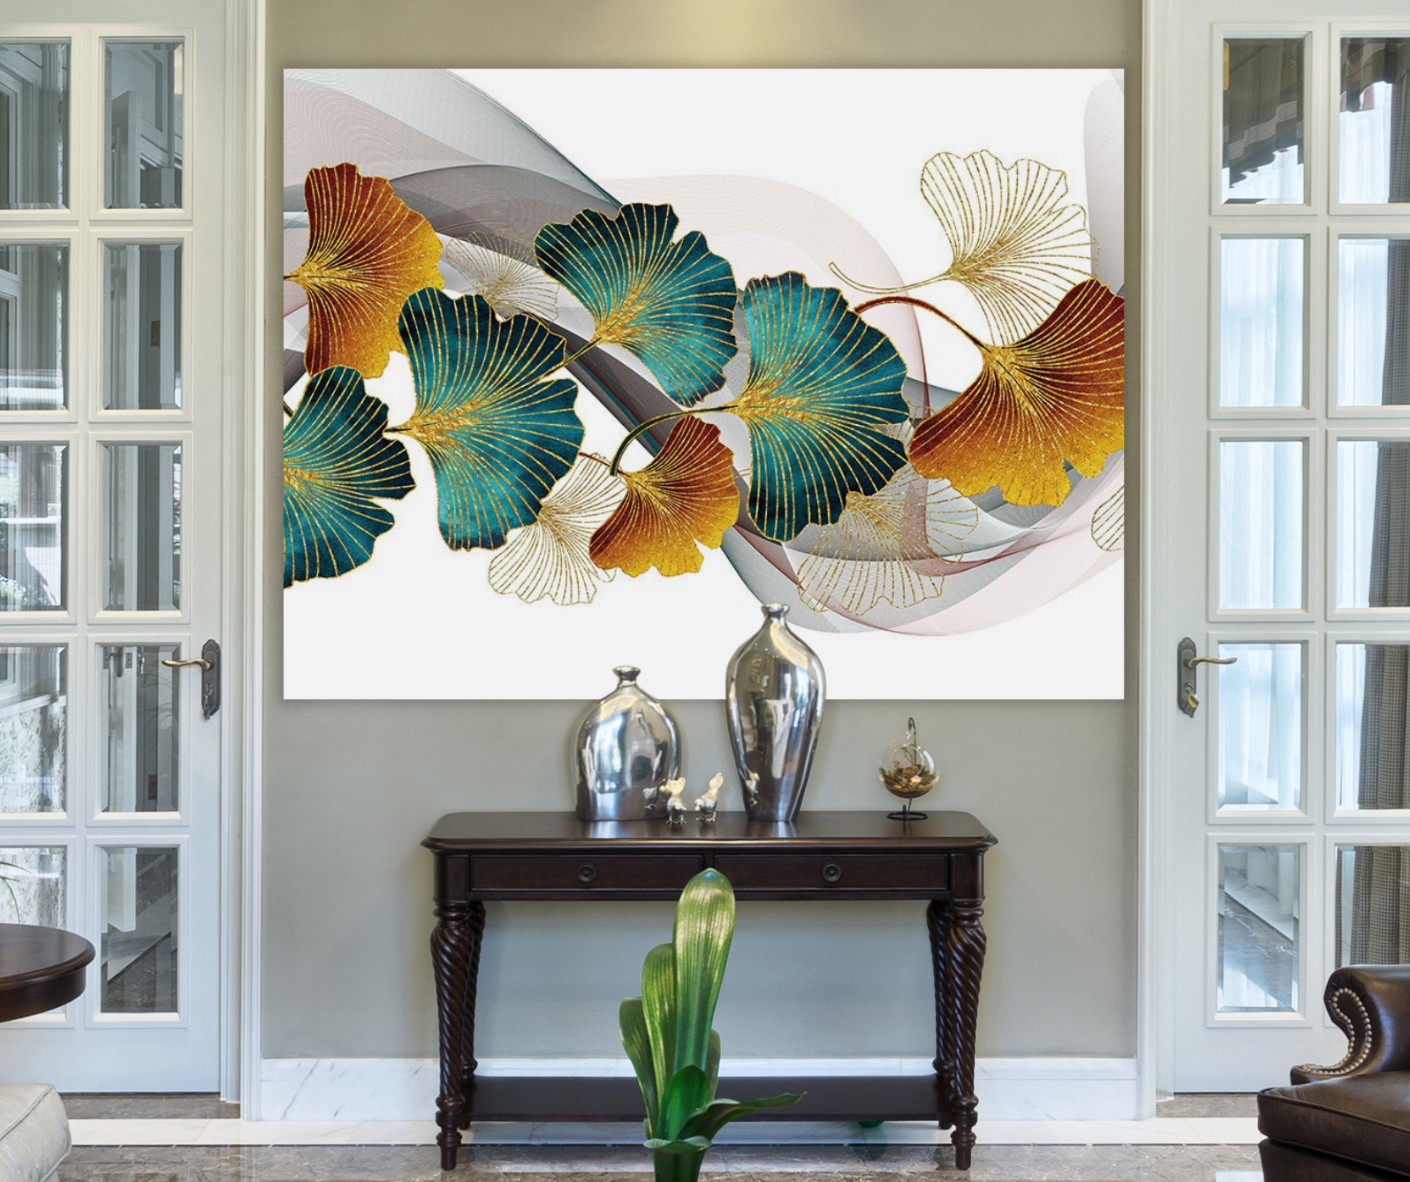 Tapiz LED KaiSha para colgar en la pared; Decoración de arte abstracto moderno Paisaje bohemio Floral